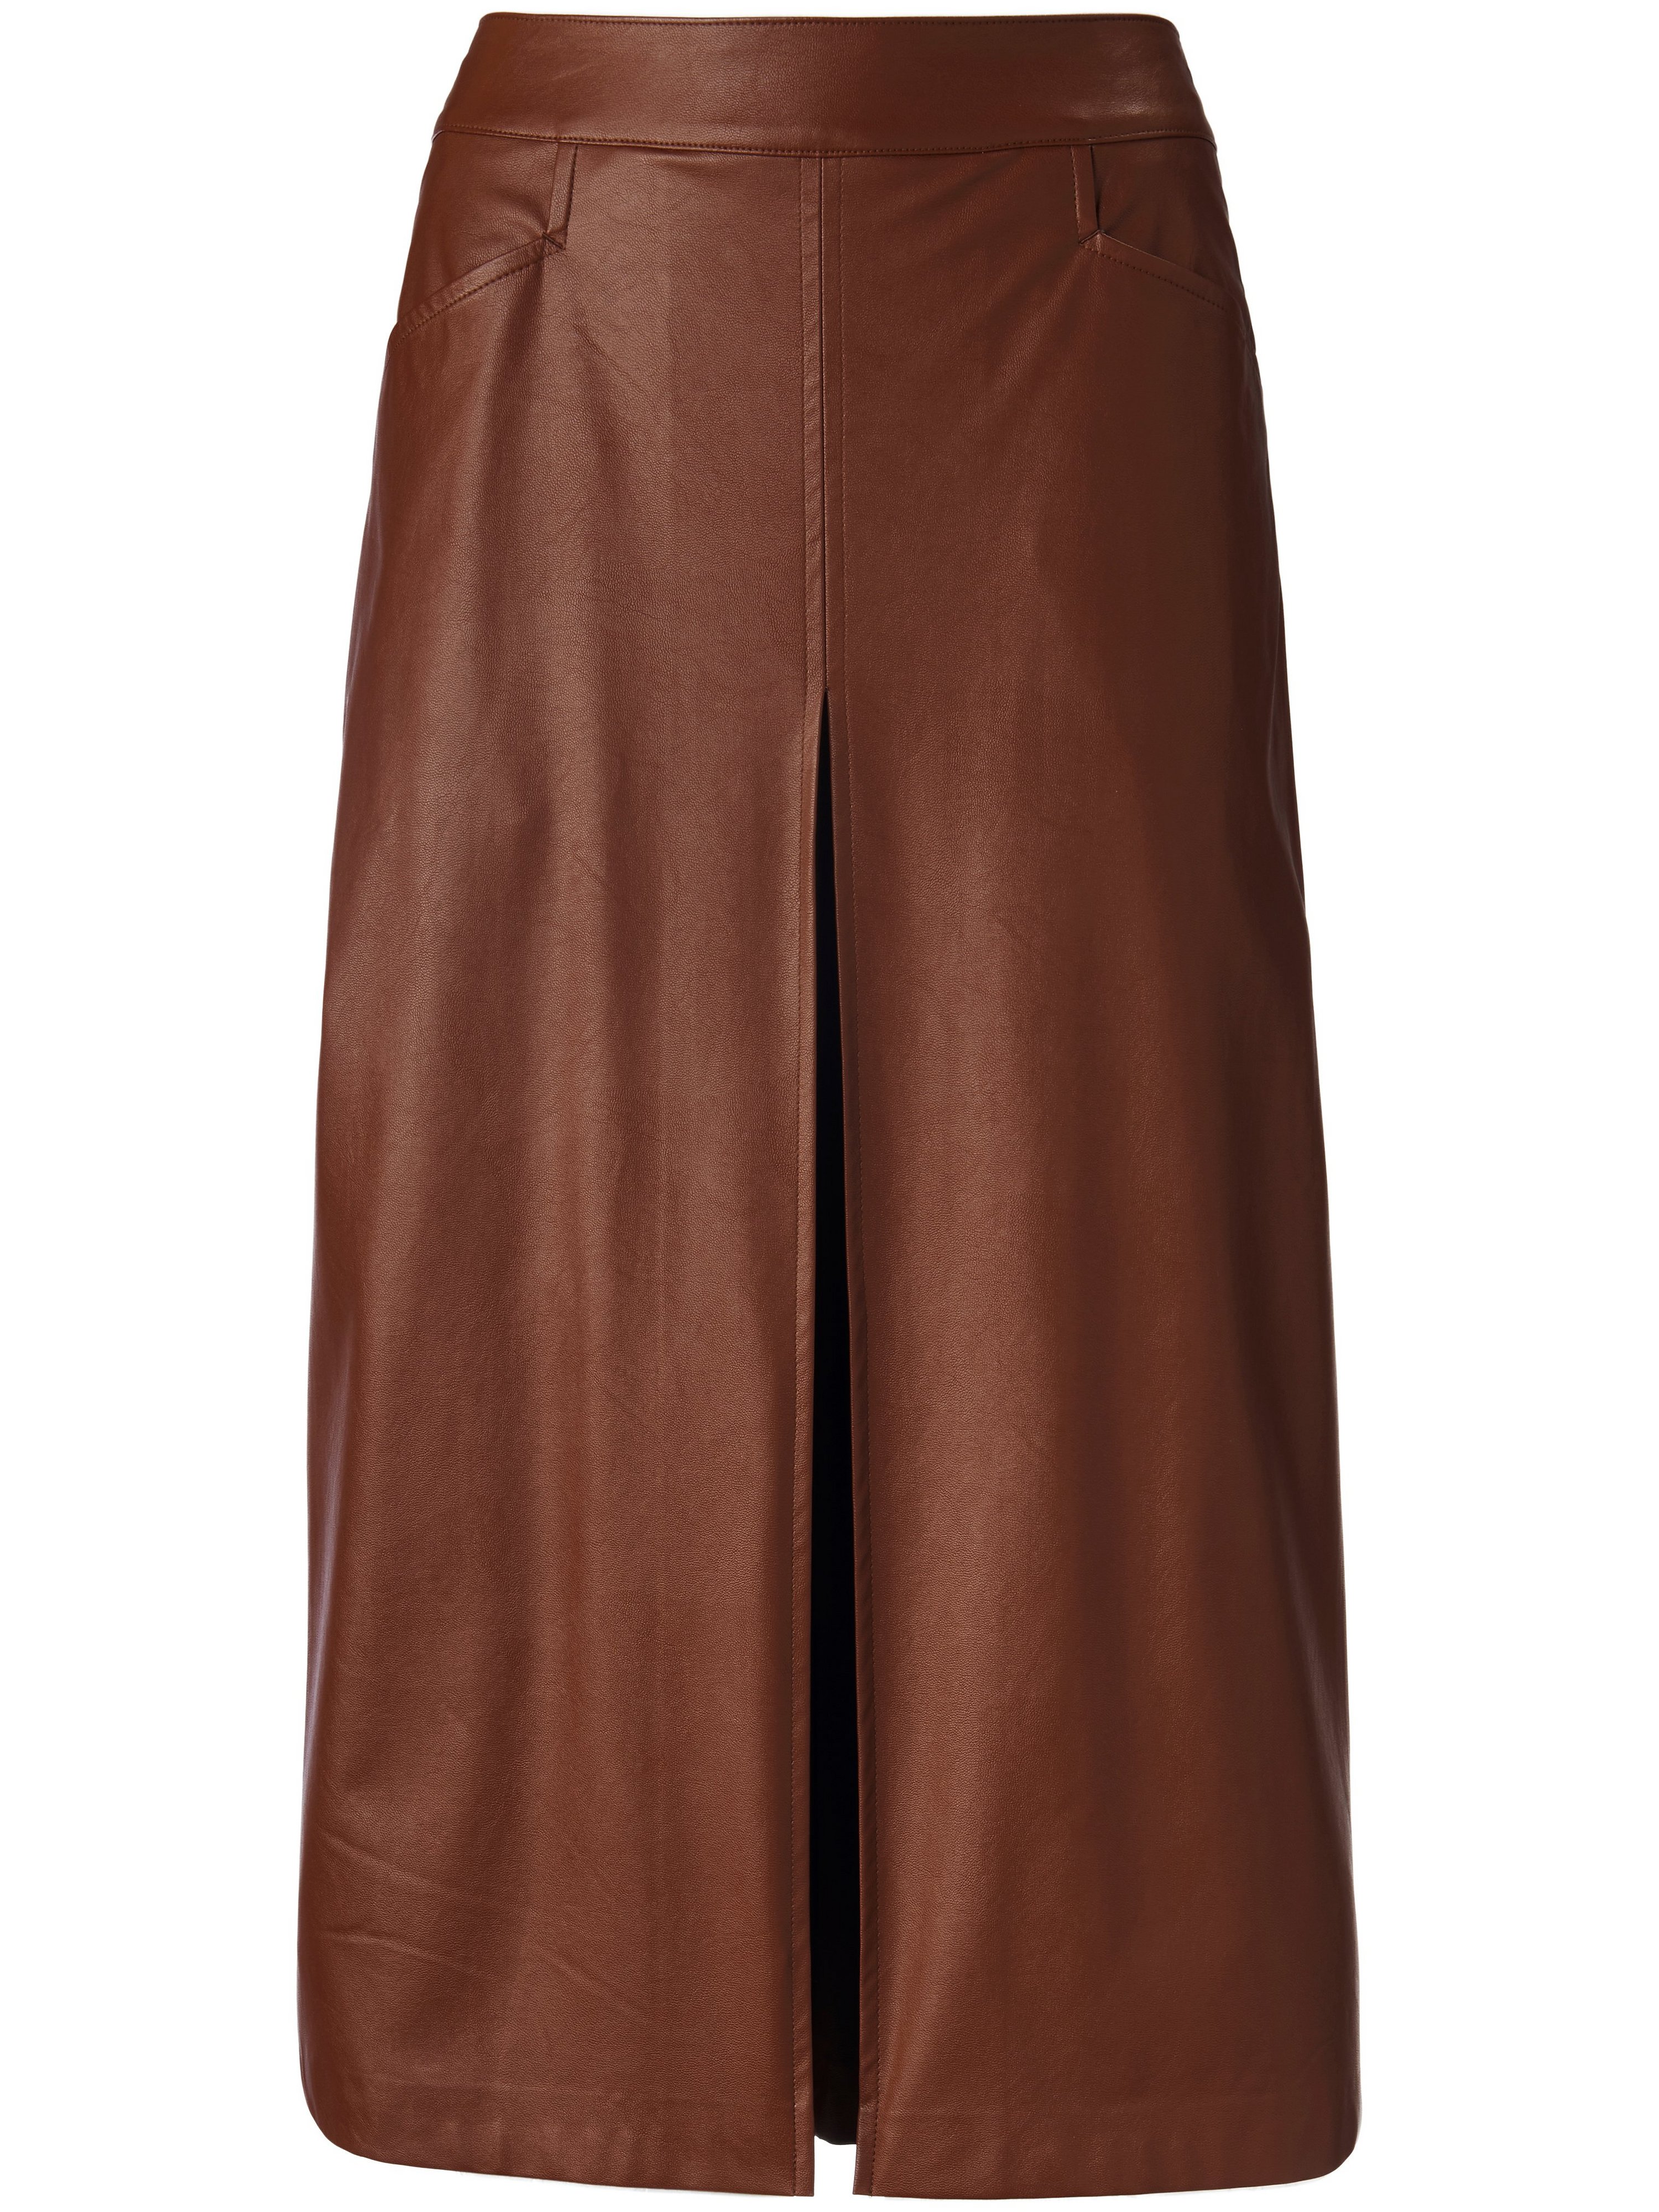 La jupe-culotte zippée au dos  portray berlin marron